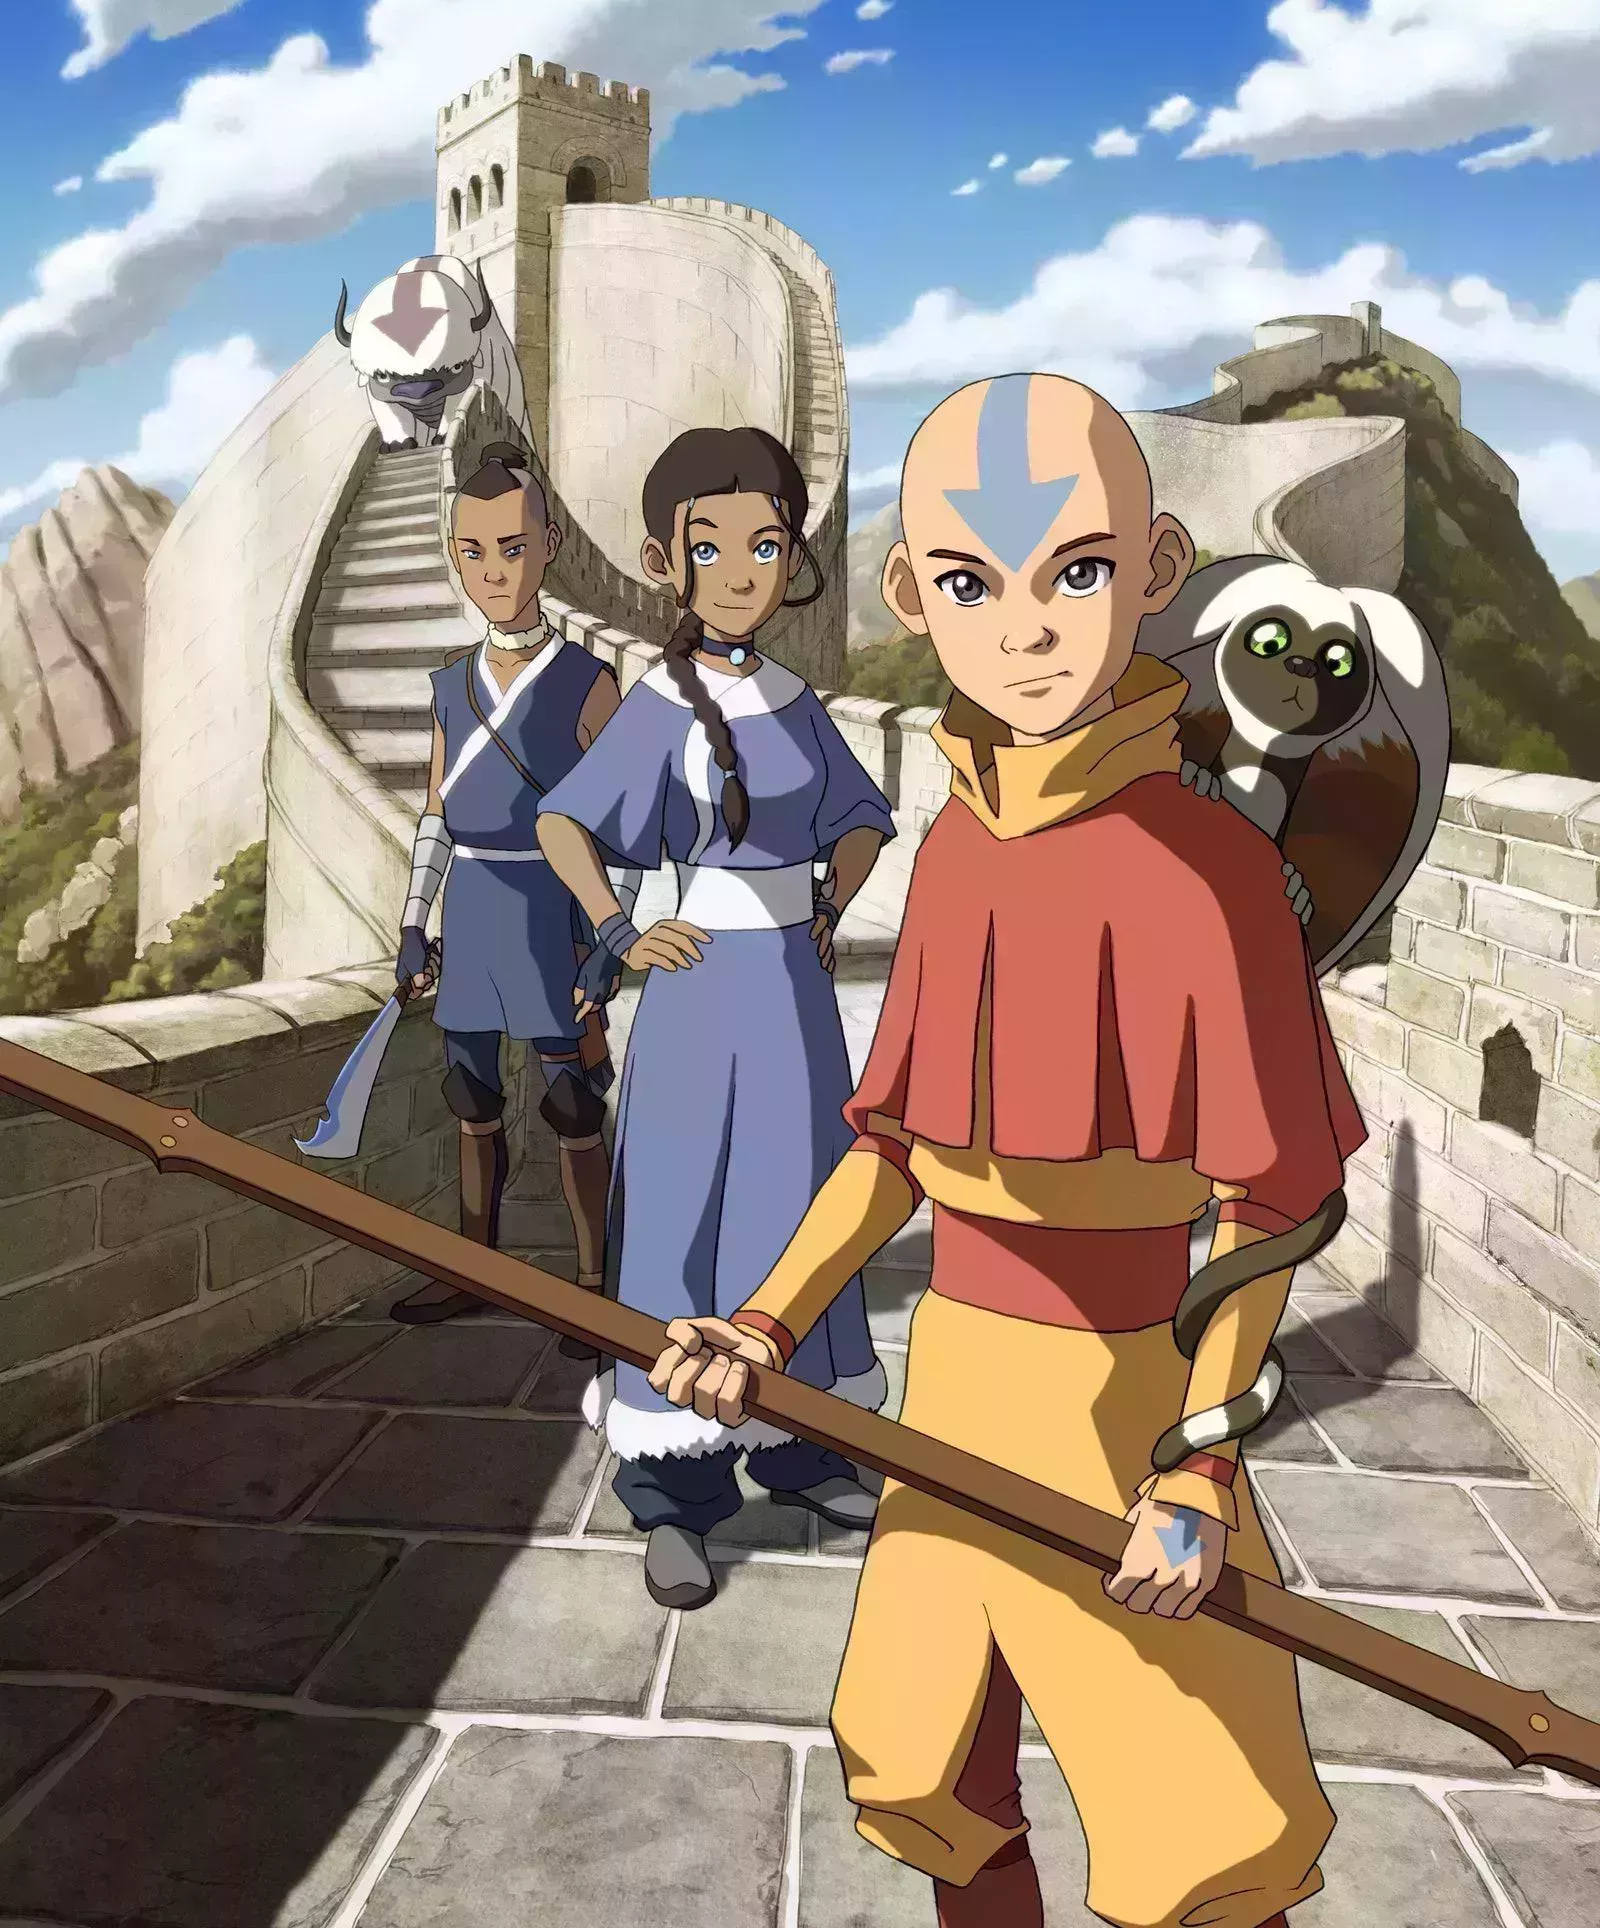 Aang se enfrenta a la Nación del Fuego en el primer tráiler de acción real de Avatar